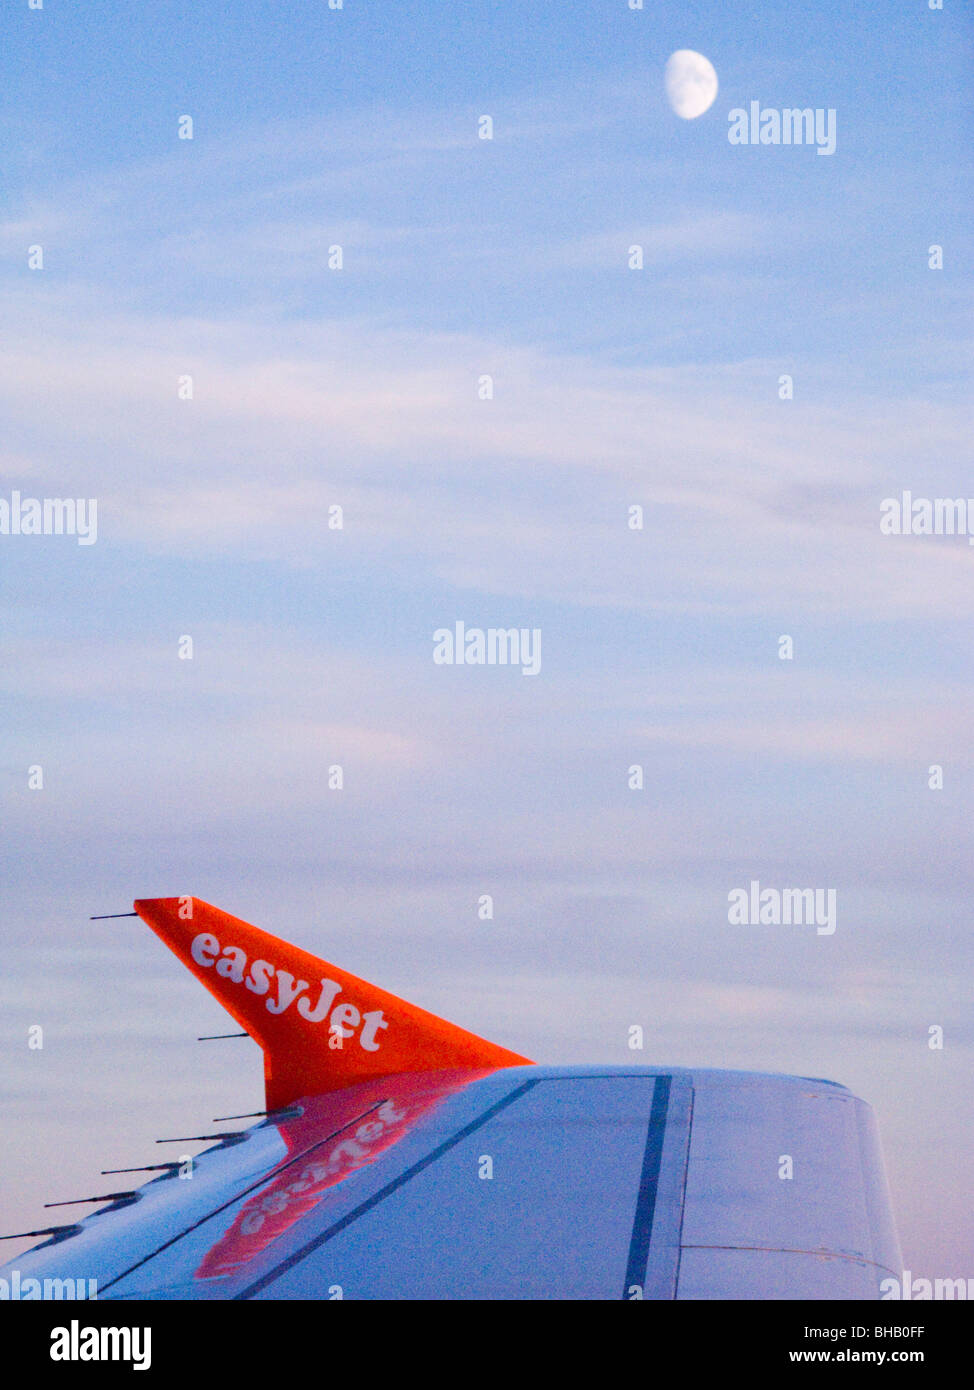 Vuelo de easyJet Airbus A319 avión / ala de avión, cielo azul, y luna, mientras vuela a través de Europa. El wingtip en el avión de Airbus se llama sharklet sharklets. Foto de stock